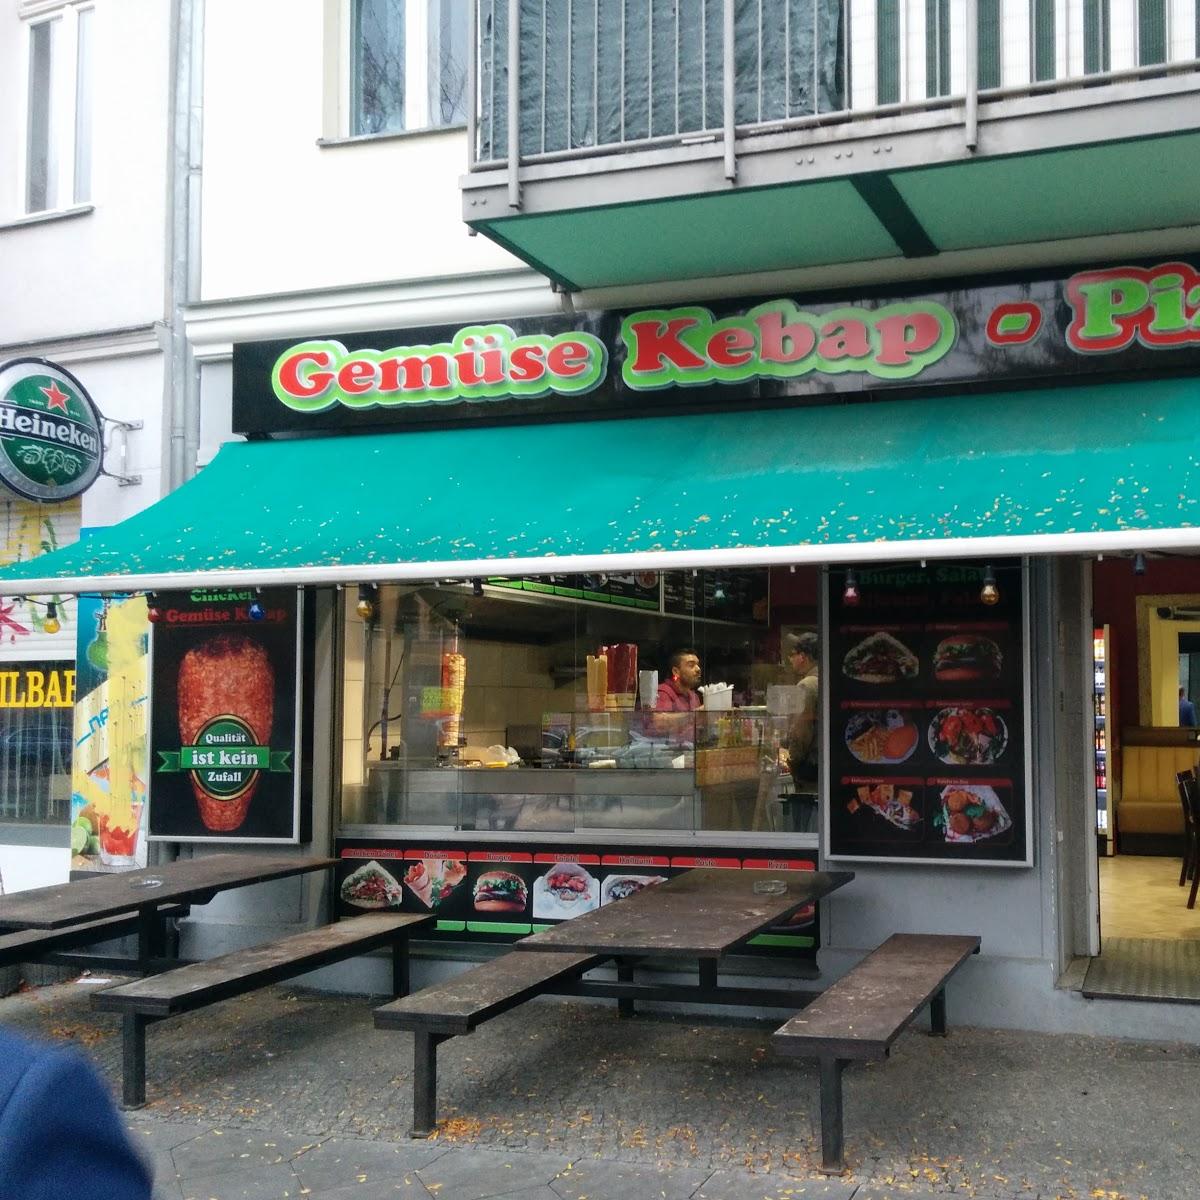 Restaurant "Gemüse Kebap Pizza" in Berlin